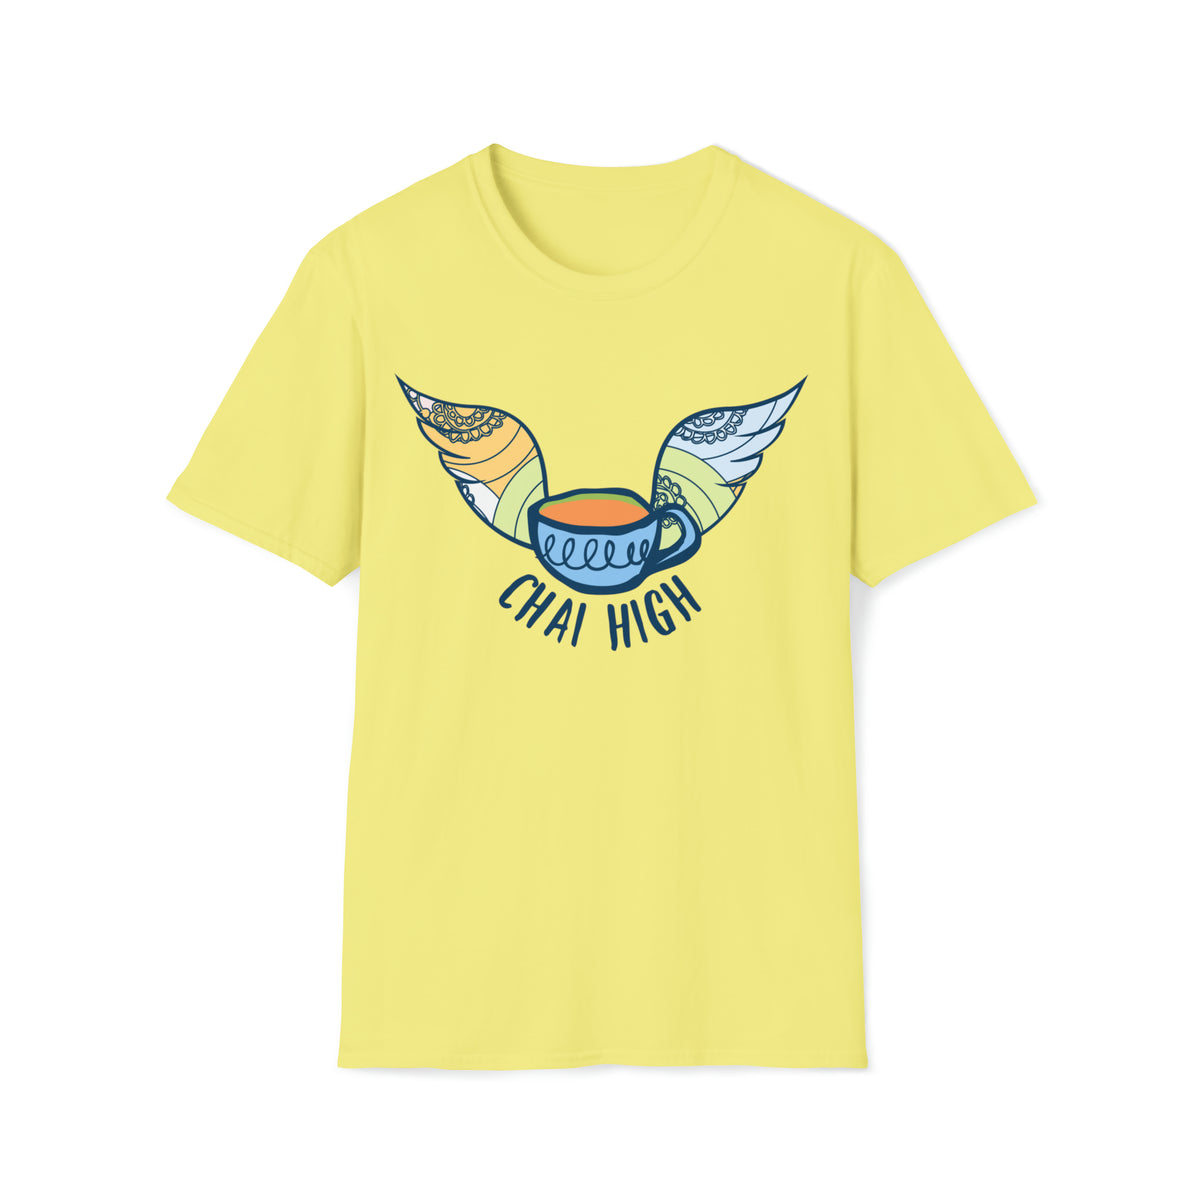 Chai High Chai Tea Shirt | Chai Tea Lover Shirt |  Tea Lover Gift | Unisex Soft Style T-shirt